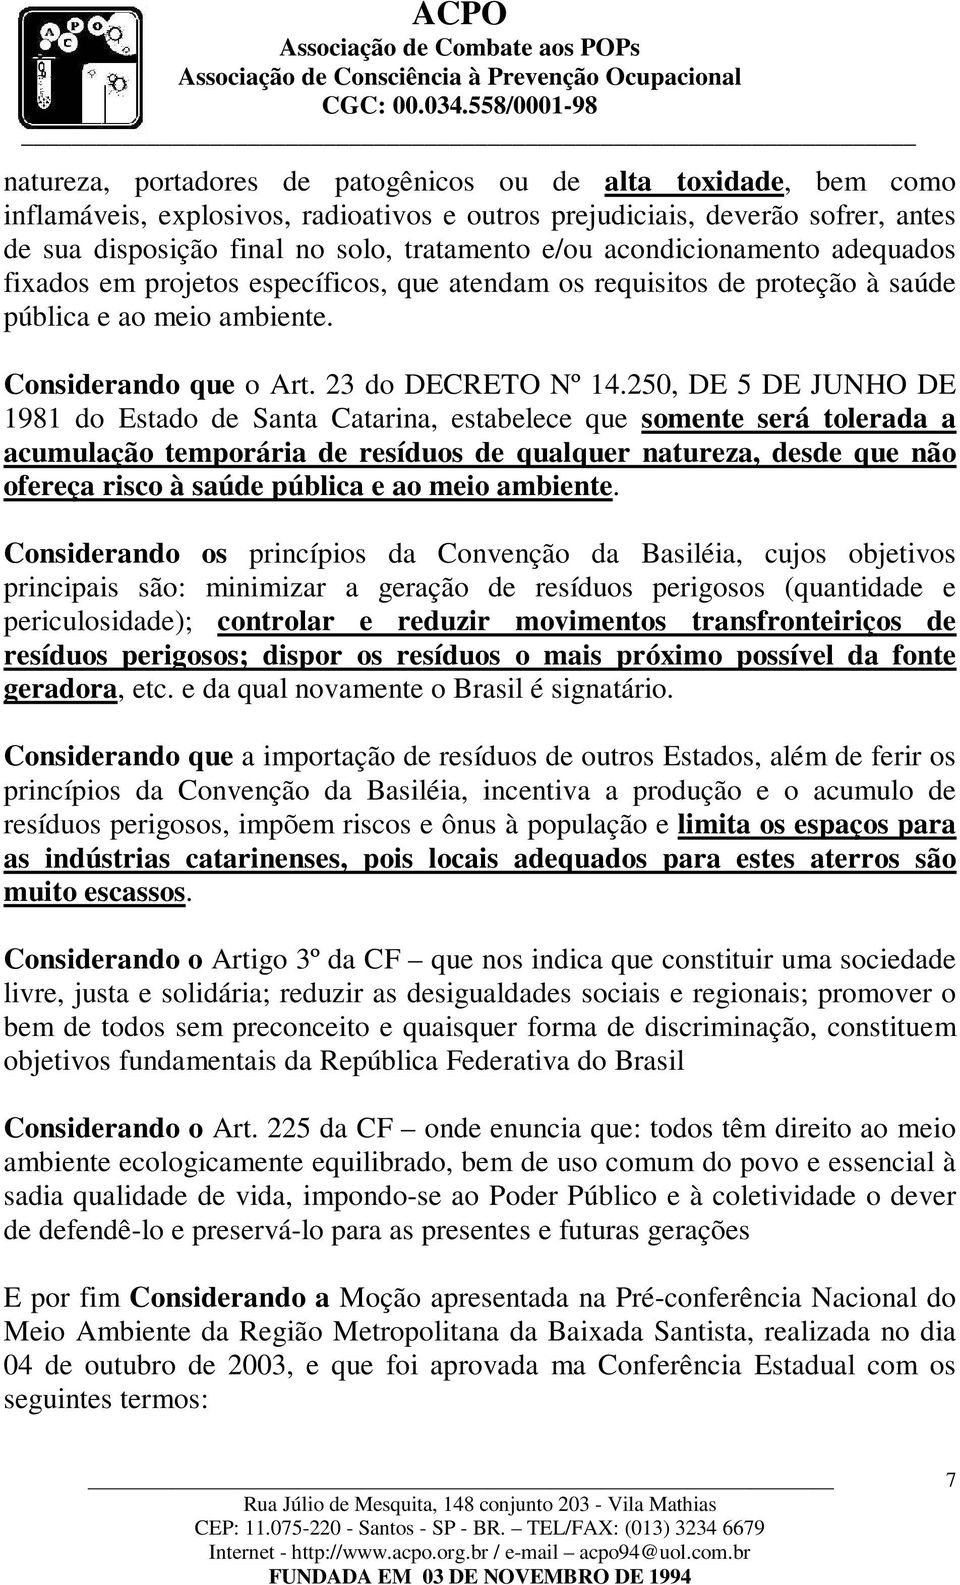 250, DE 5 DE JUNHO DE 1981 do Estado de Santa Catarina, estabelece que somente será tolerada a acumulação temporária de resíduos de qualquer natureza, desde que não ofereça risco à saúde pública e ao